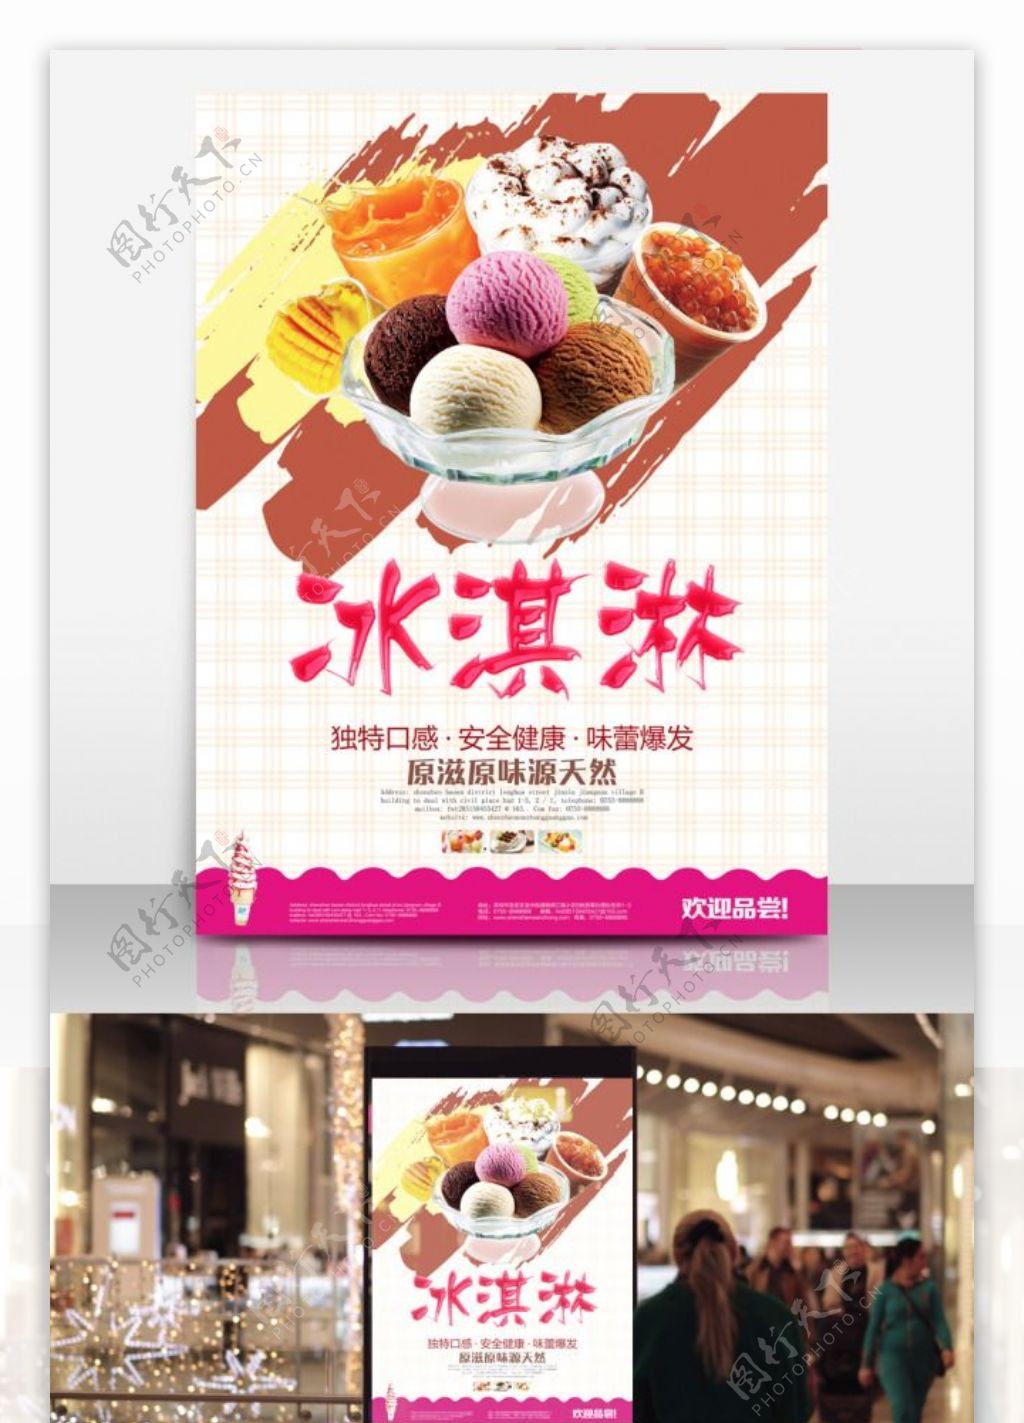 冰激凌球冷饮甜品店宣传海报简约冰淇淋海报设计